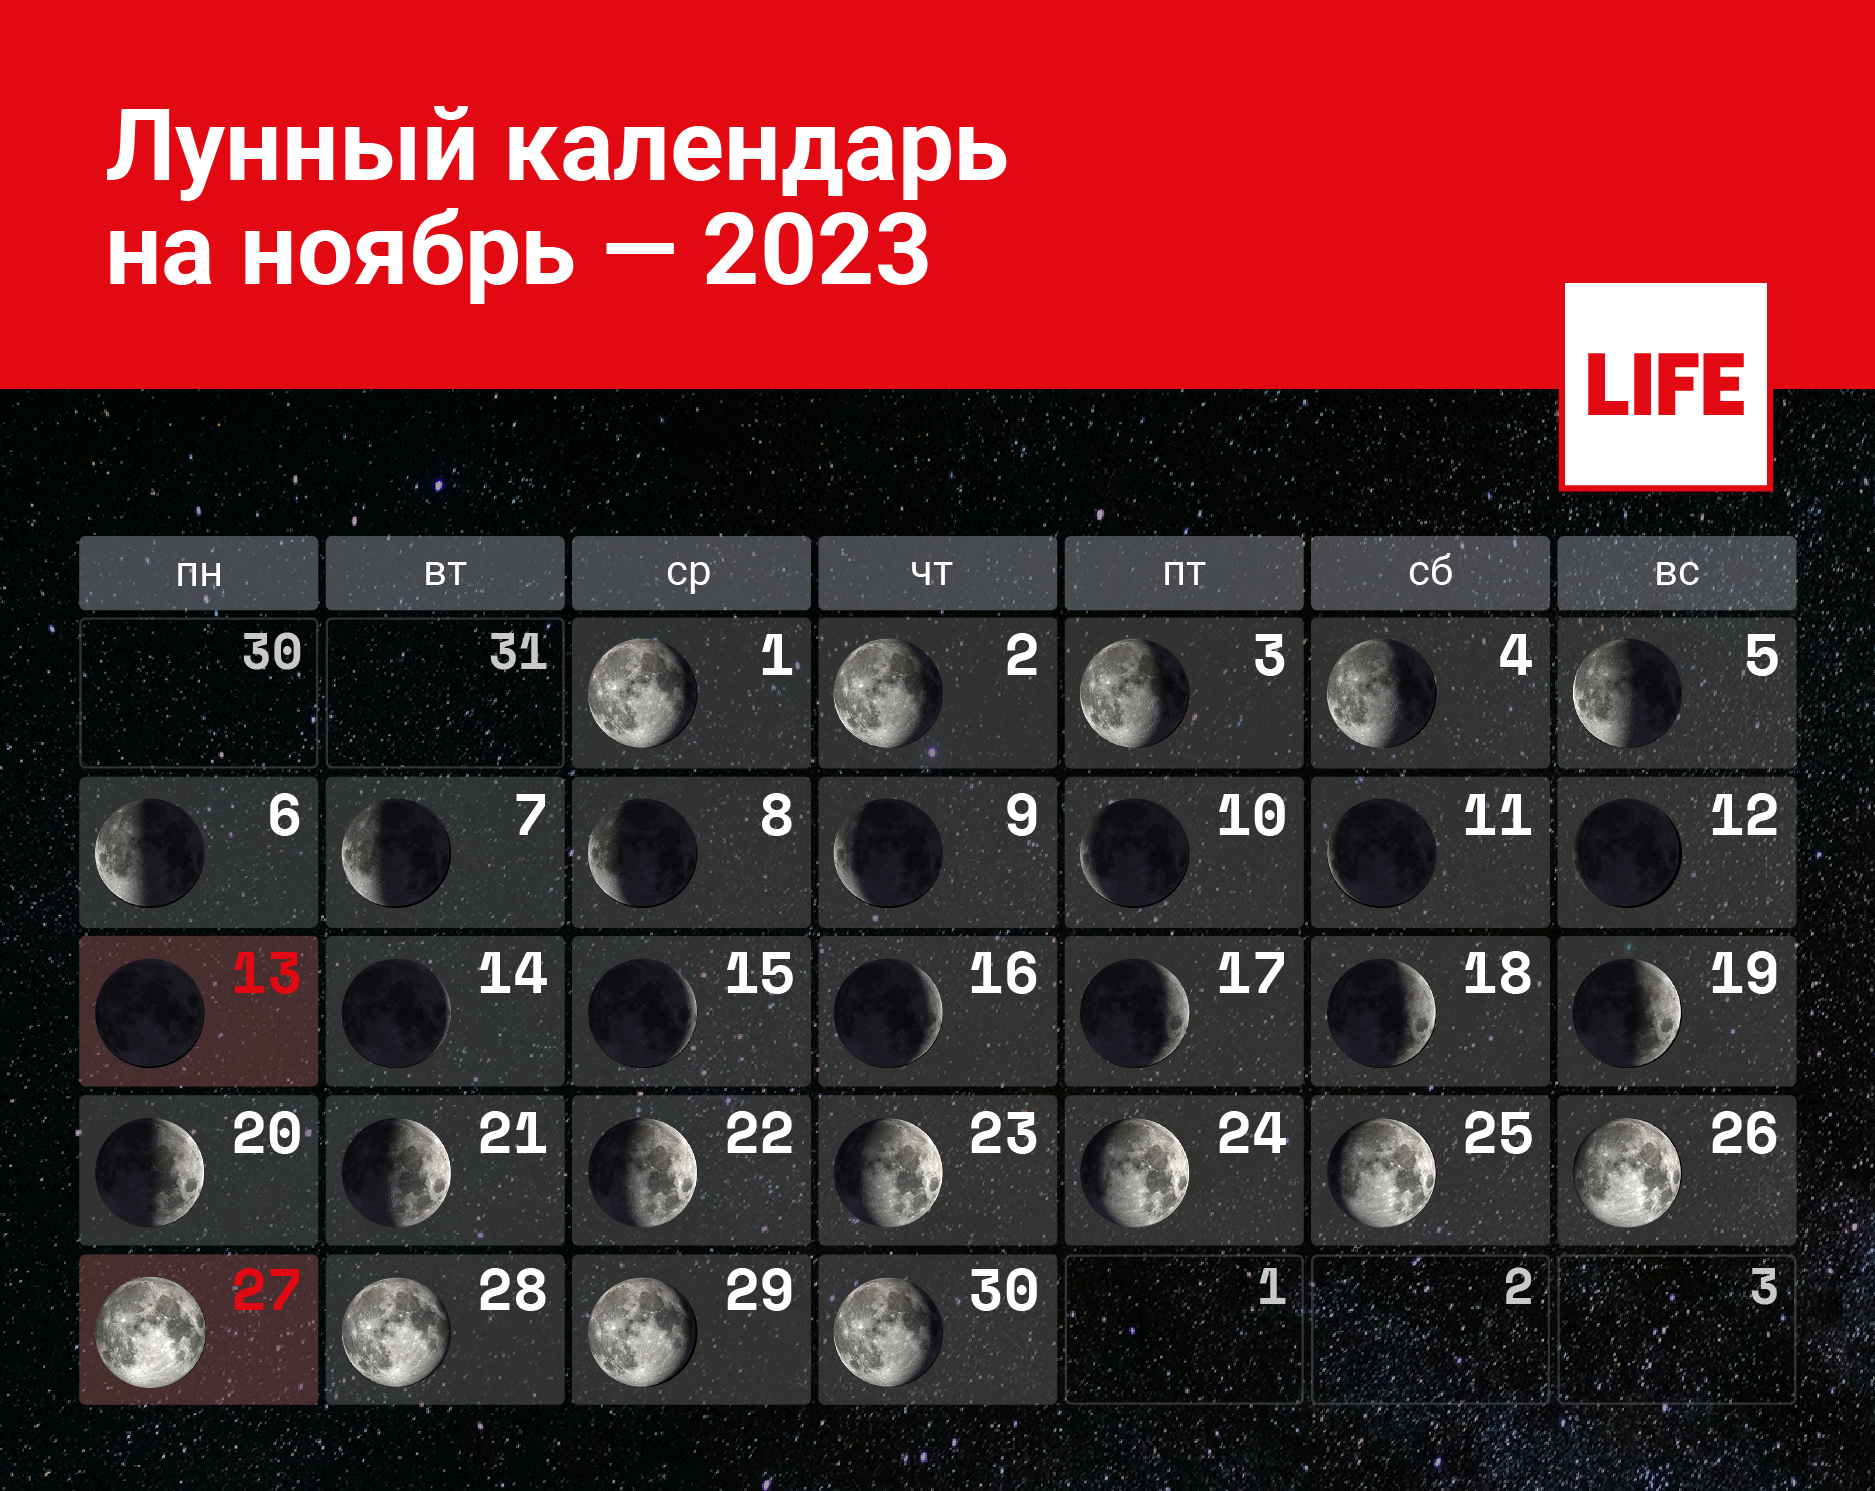 Календарь лунных фаз в ноябре 2023 года. Инфографика © LIFE 